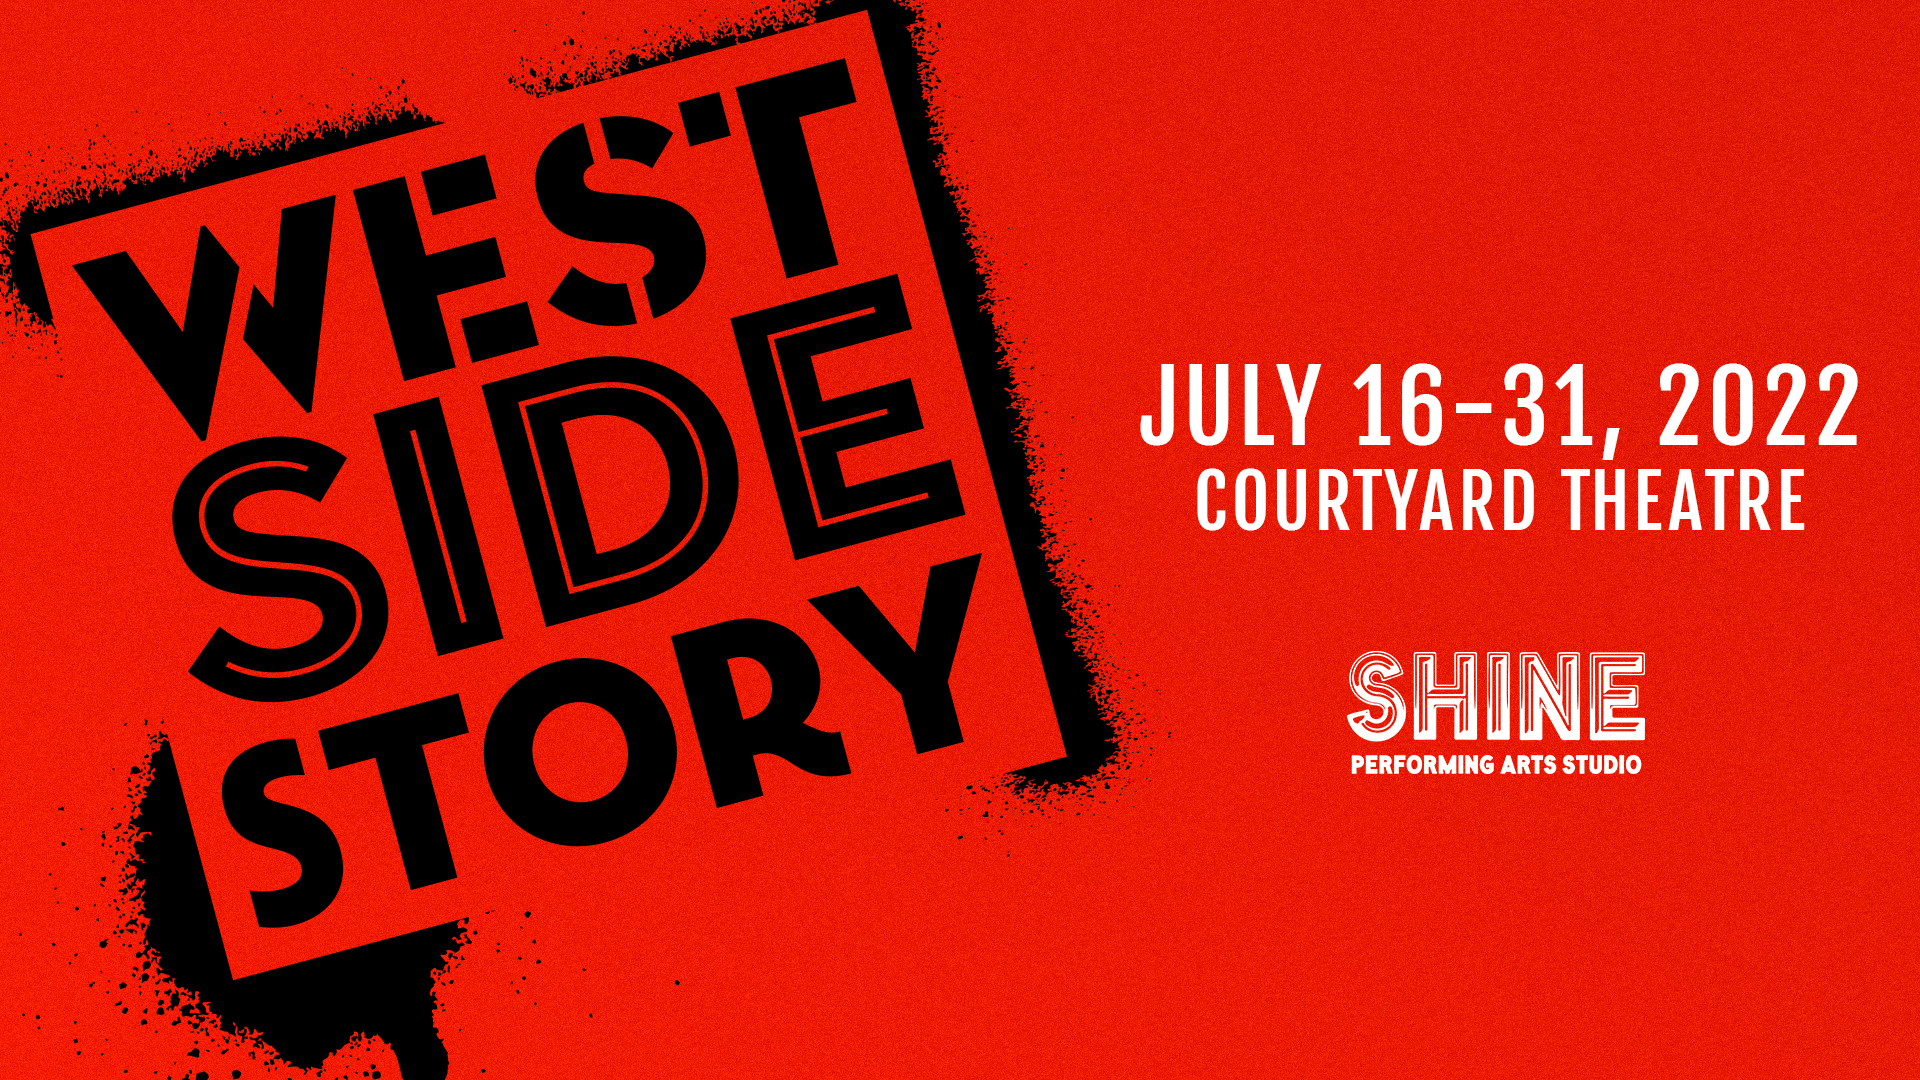 West Side Story Facebook Image